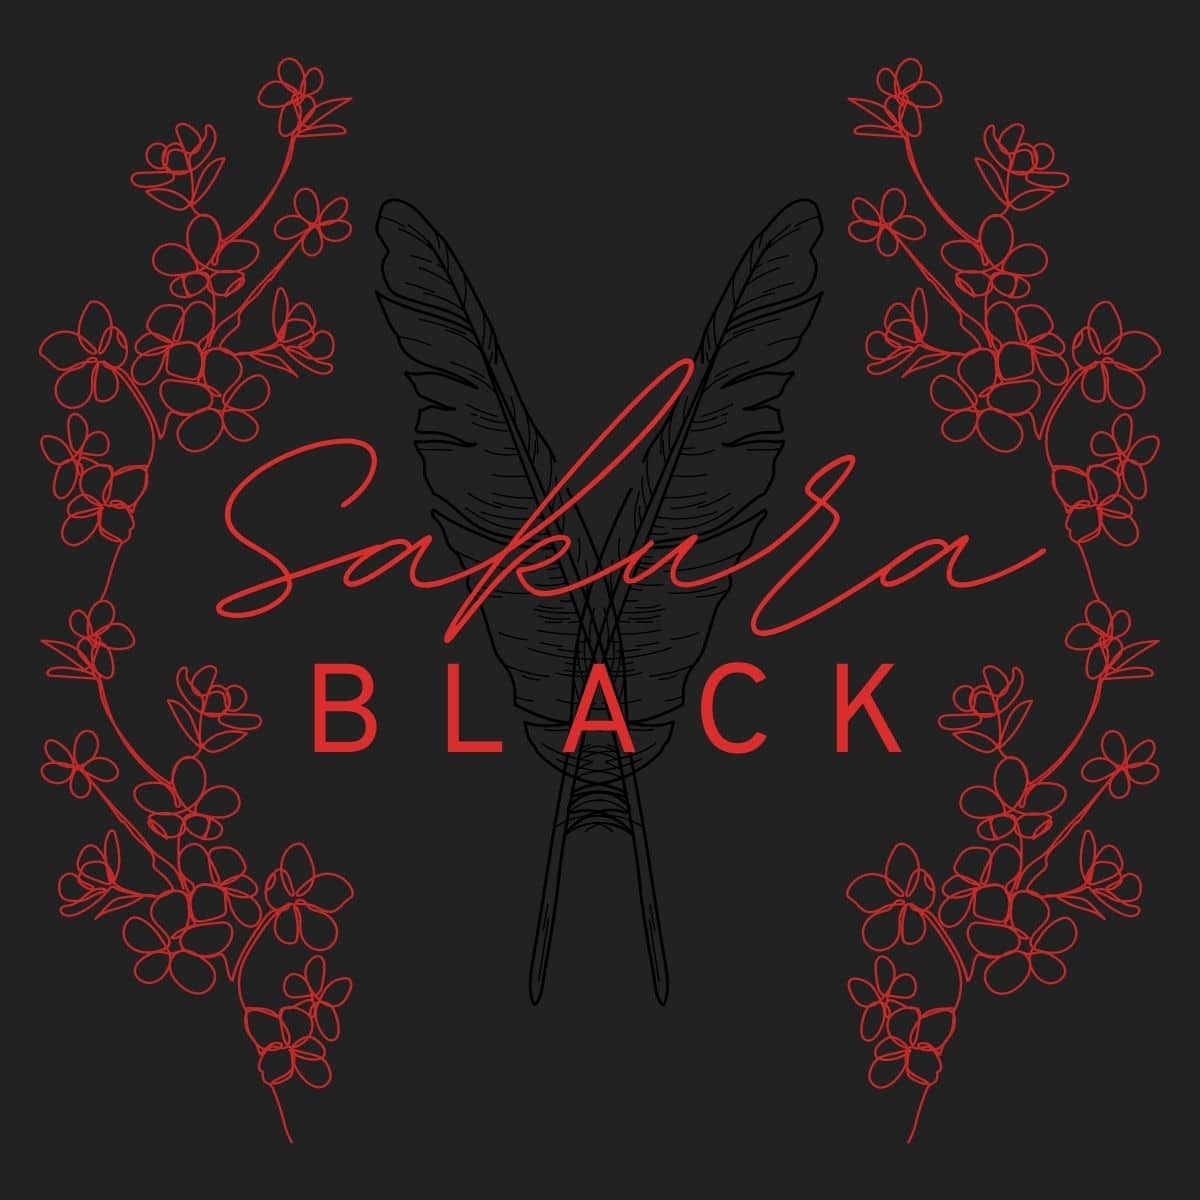 sakura black author logo.